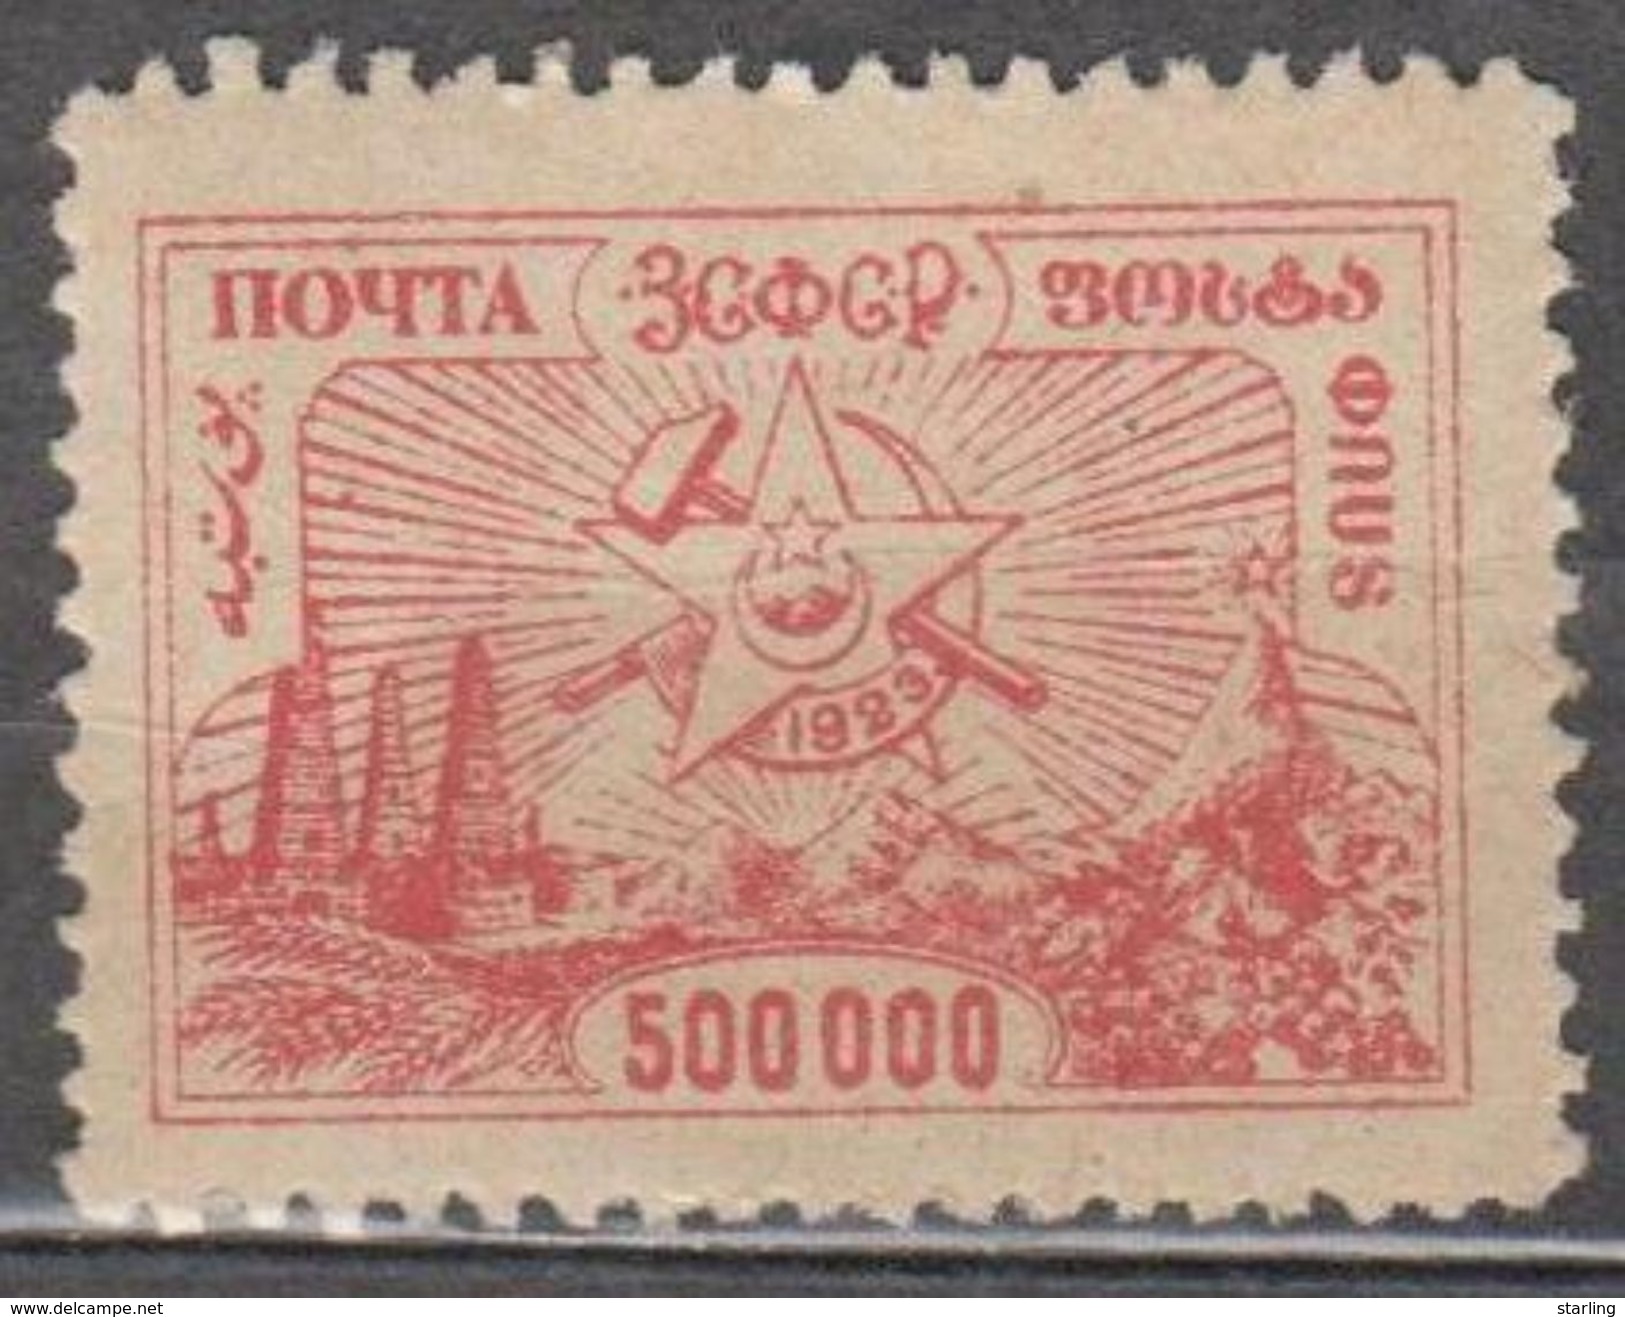 Russia USSR Federative Social Soviet Republic 1923 Mi# 24 Standart MH * - République Sociale Fédérative Soviétique